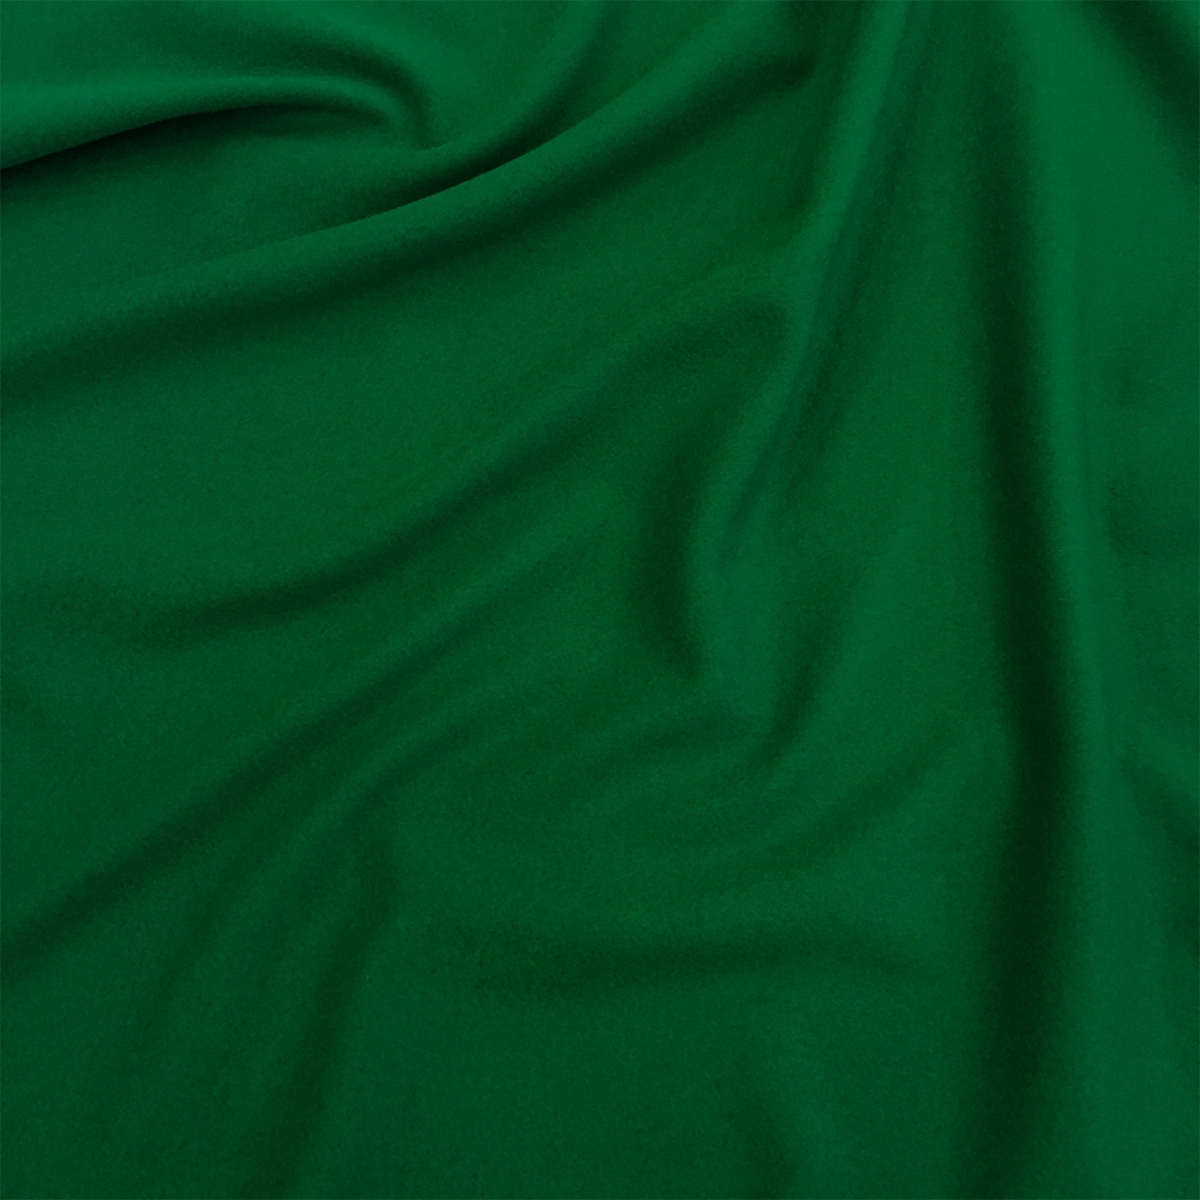 Ткань зеленая с цветами. Зеленая ткань. Зеленый цвет ткани. Темно зеленая ткань. Оттенки зеленого в тканях.